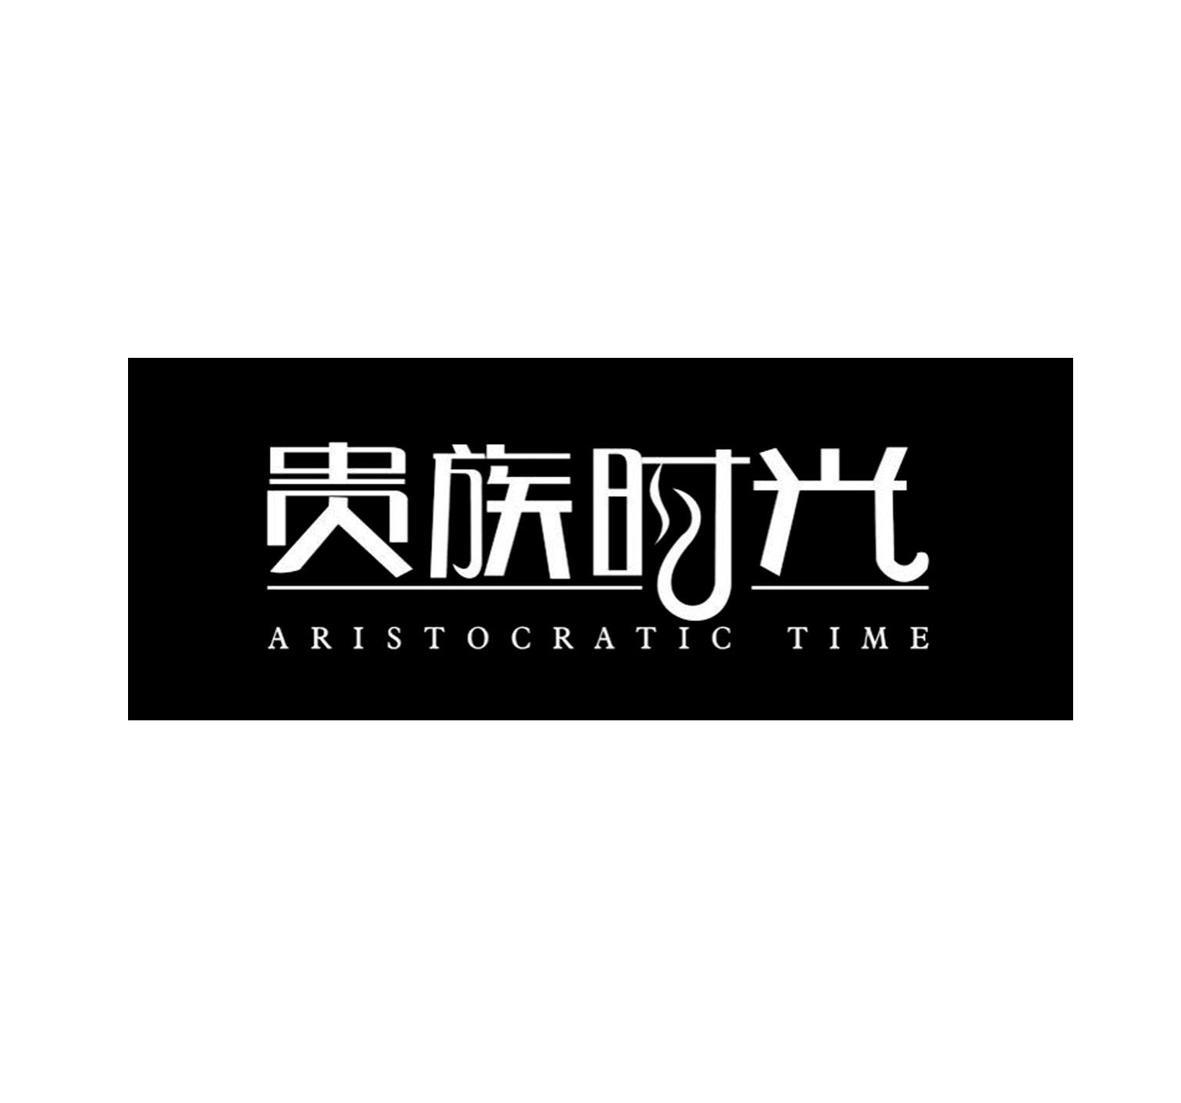 09类-科学仪器贵族时光  ARISTOCRATIC TIME商标转让